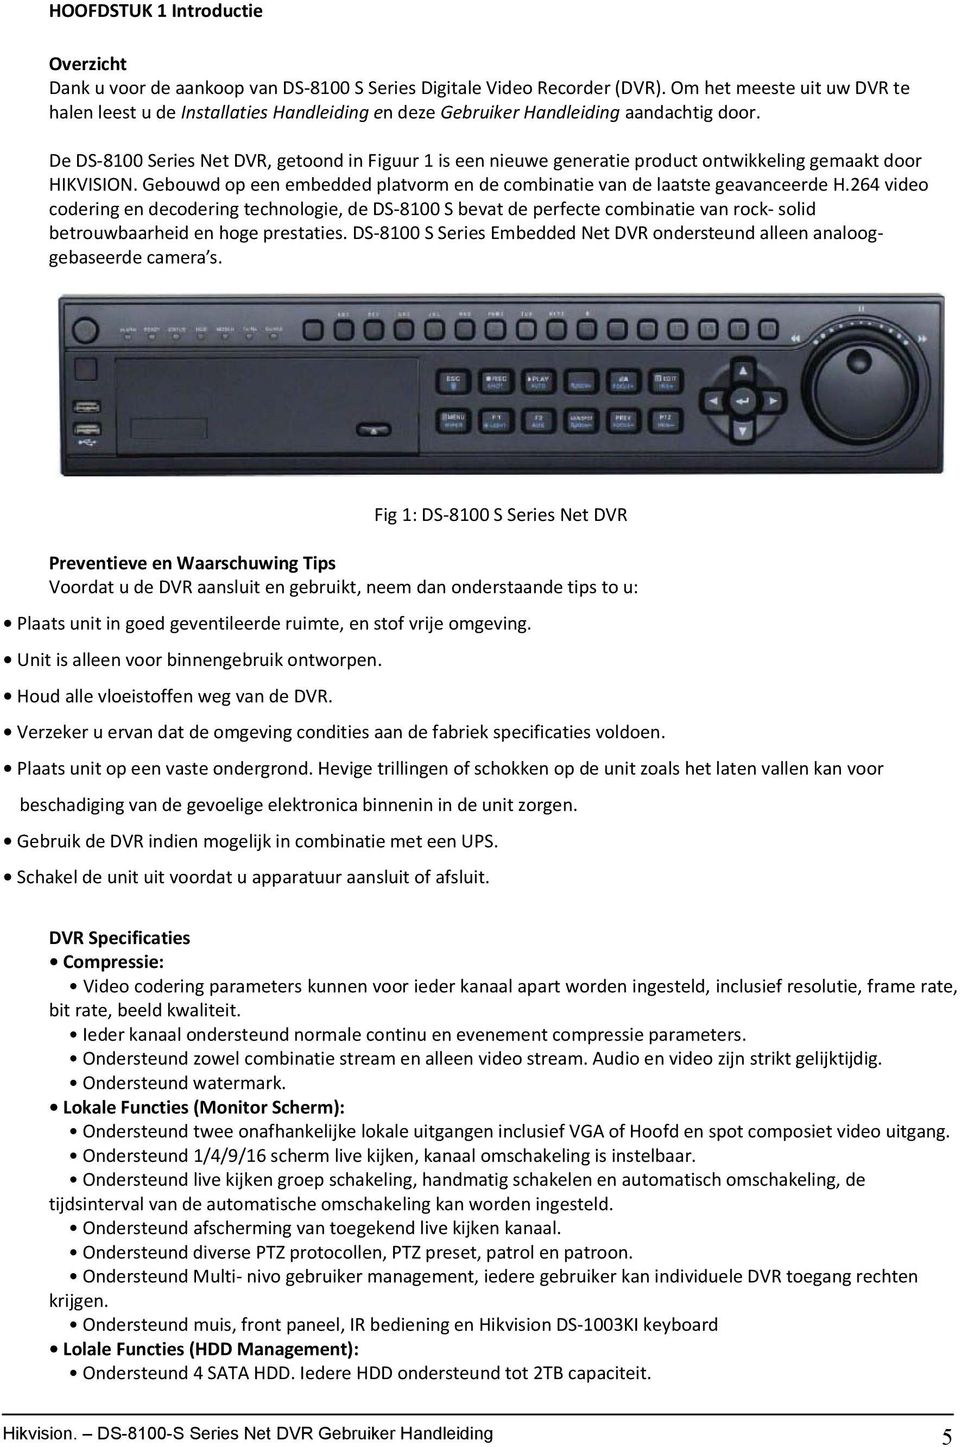 De DS 8100 Series Net DVR, getoond in Figuur 1 is een nieuwe generatie product ontwikkeling gemaakt door HIKVISION. Gebouwd op een embedded platvorm en de combinatie van de laatste geavanceerde H.